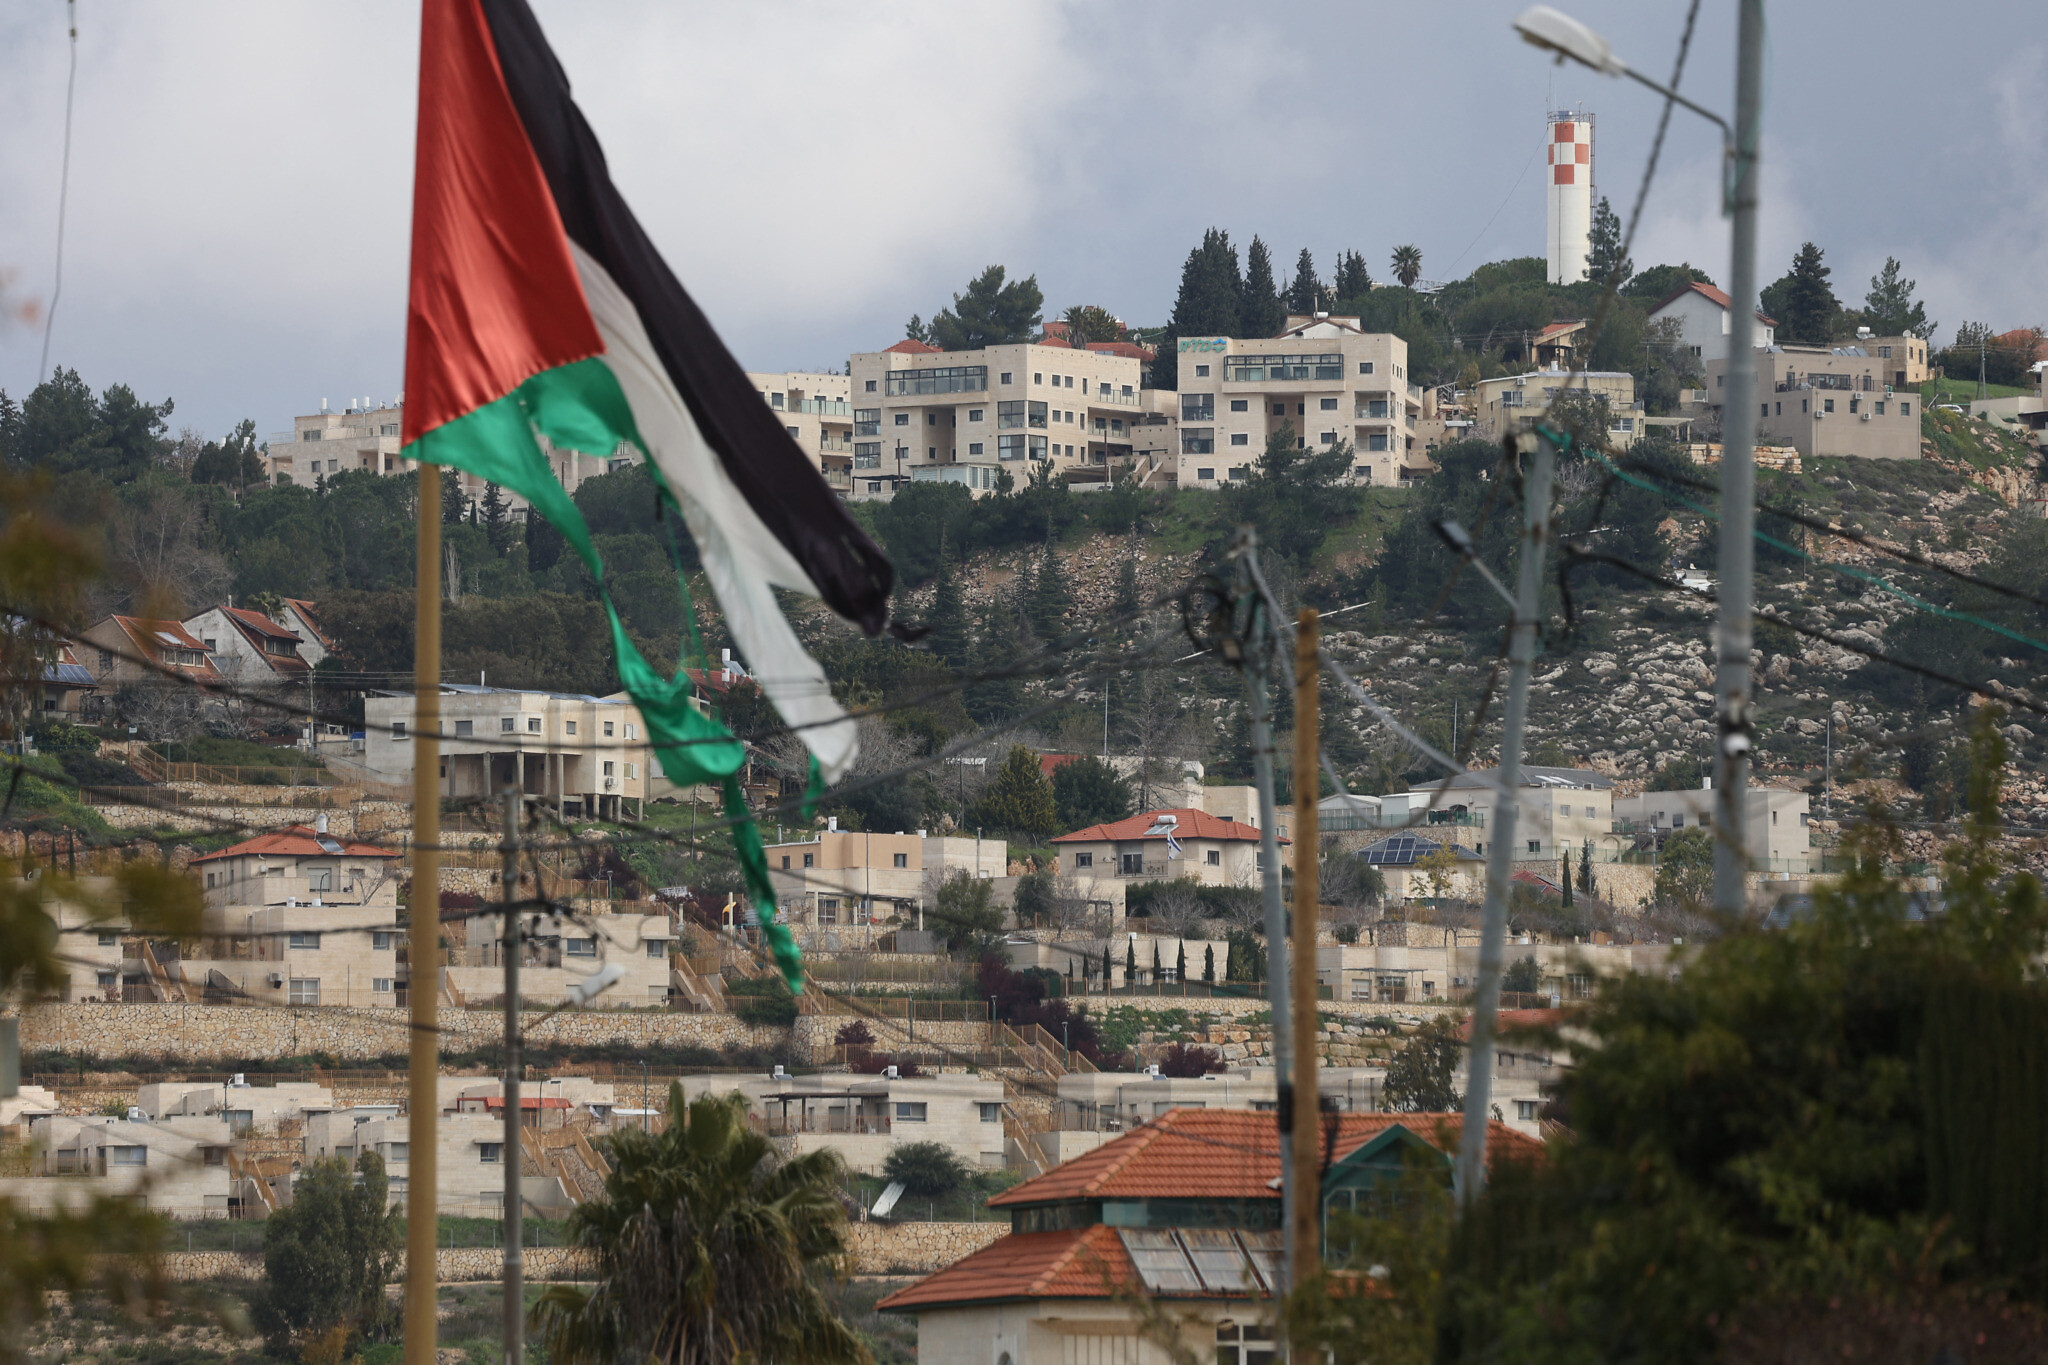 Progettare la "nuova Palestina": due contributi preziosi